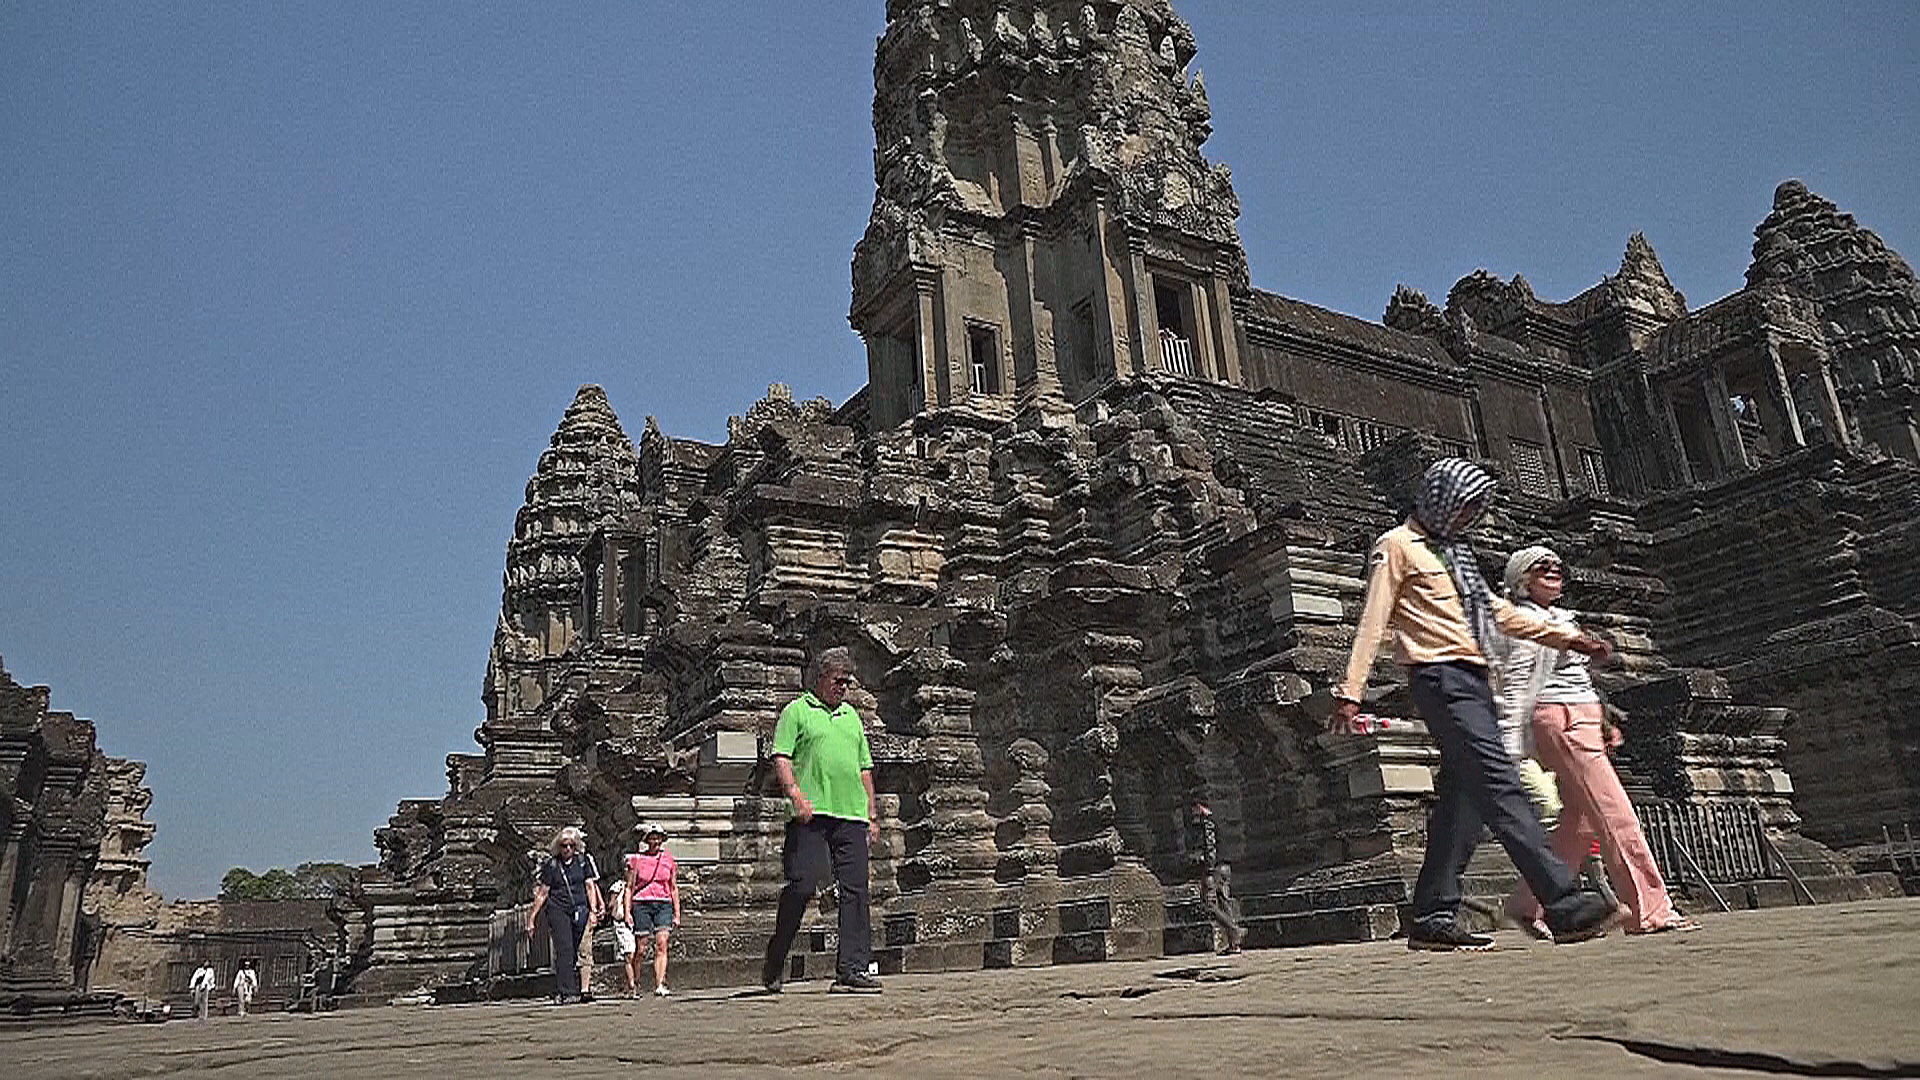 Самый знаменитый храм Камбоджи хочет вернуть прежнее число туристов